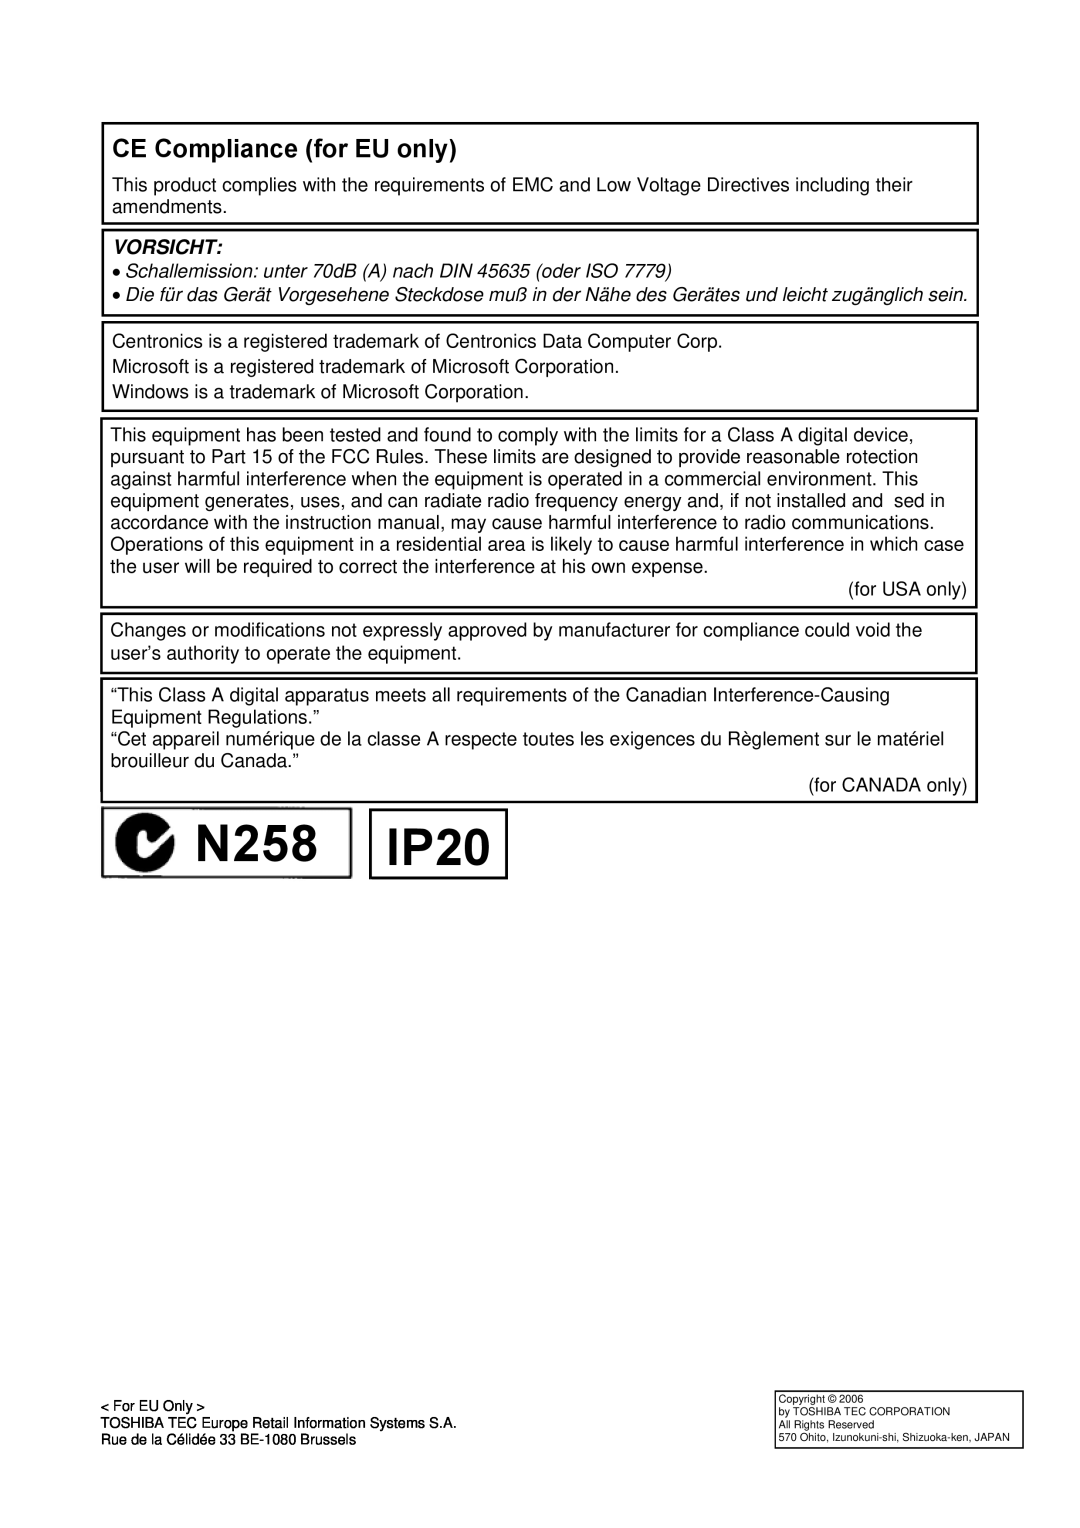 Toshiba B-SX4T N258, IP20, CE Compliance for EU only, Vorsicht, Schallemission unter 70dB A nach DIN 45635 oder ISO 